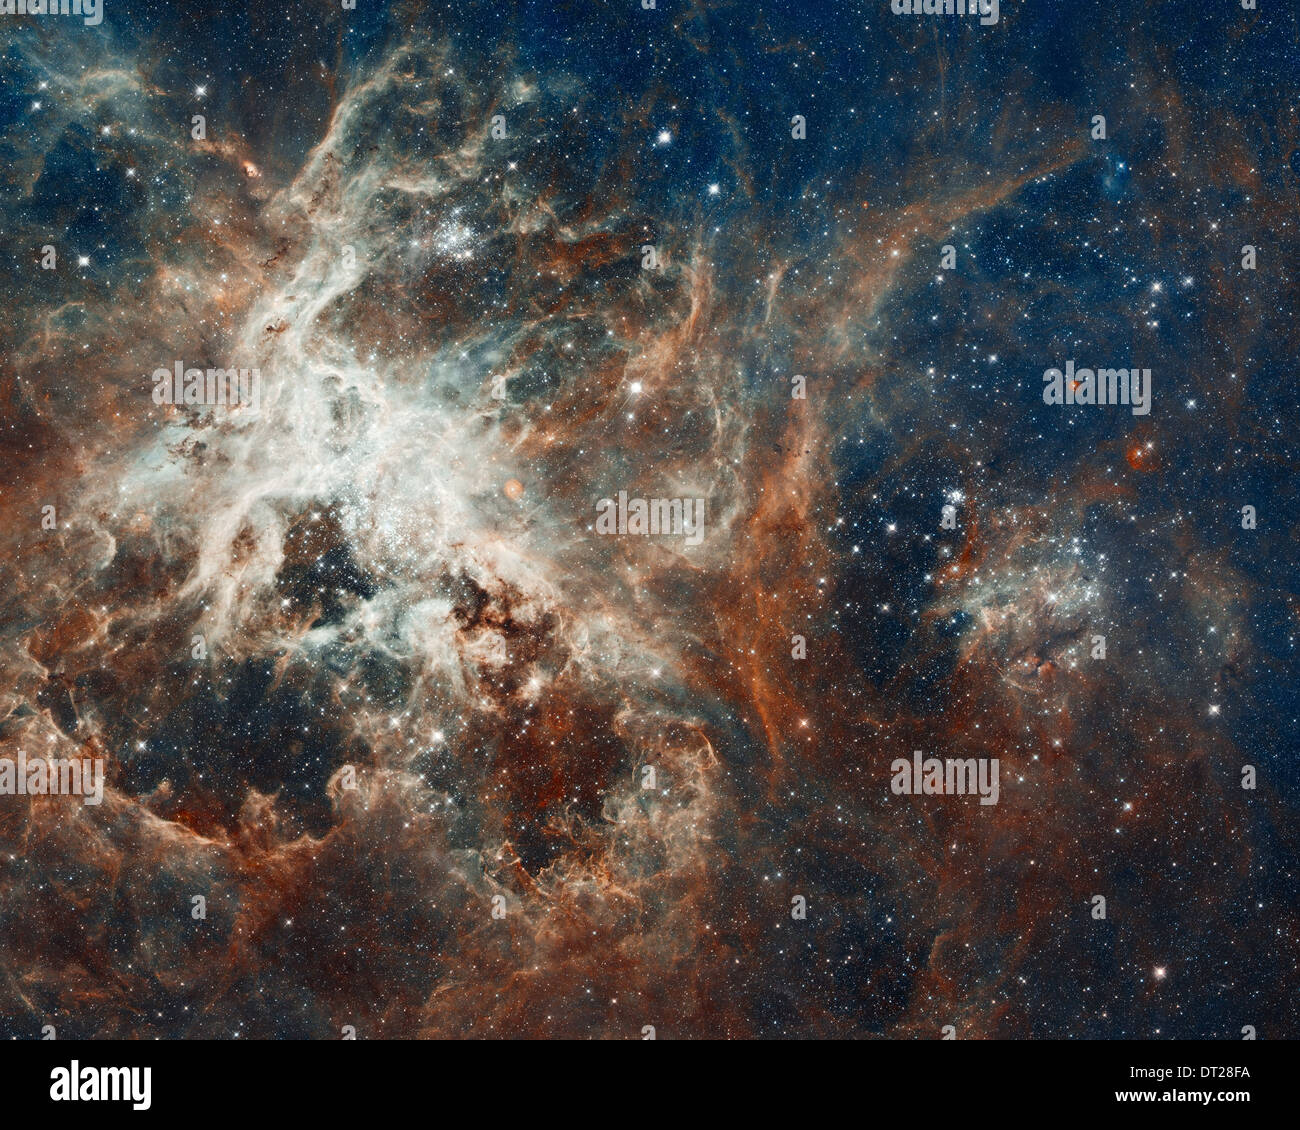 Hubble la vista panoramica di un turbolento Star-rendendo regione. Diversi milioni di stelle sono in lizza per l'attenzione in questo NASA/ESA immagine. Foto Stock